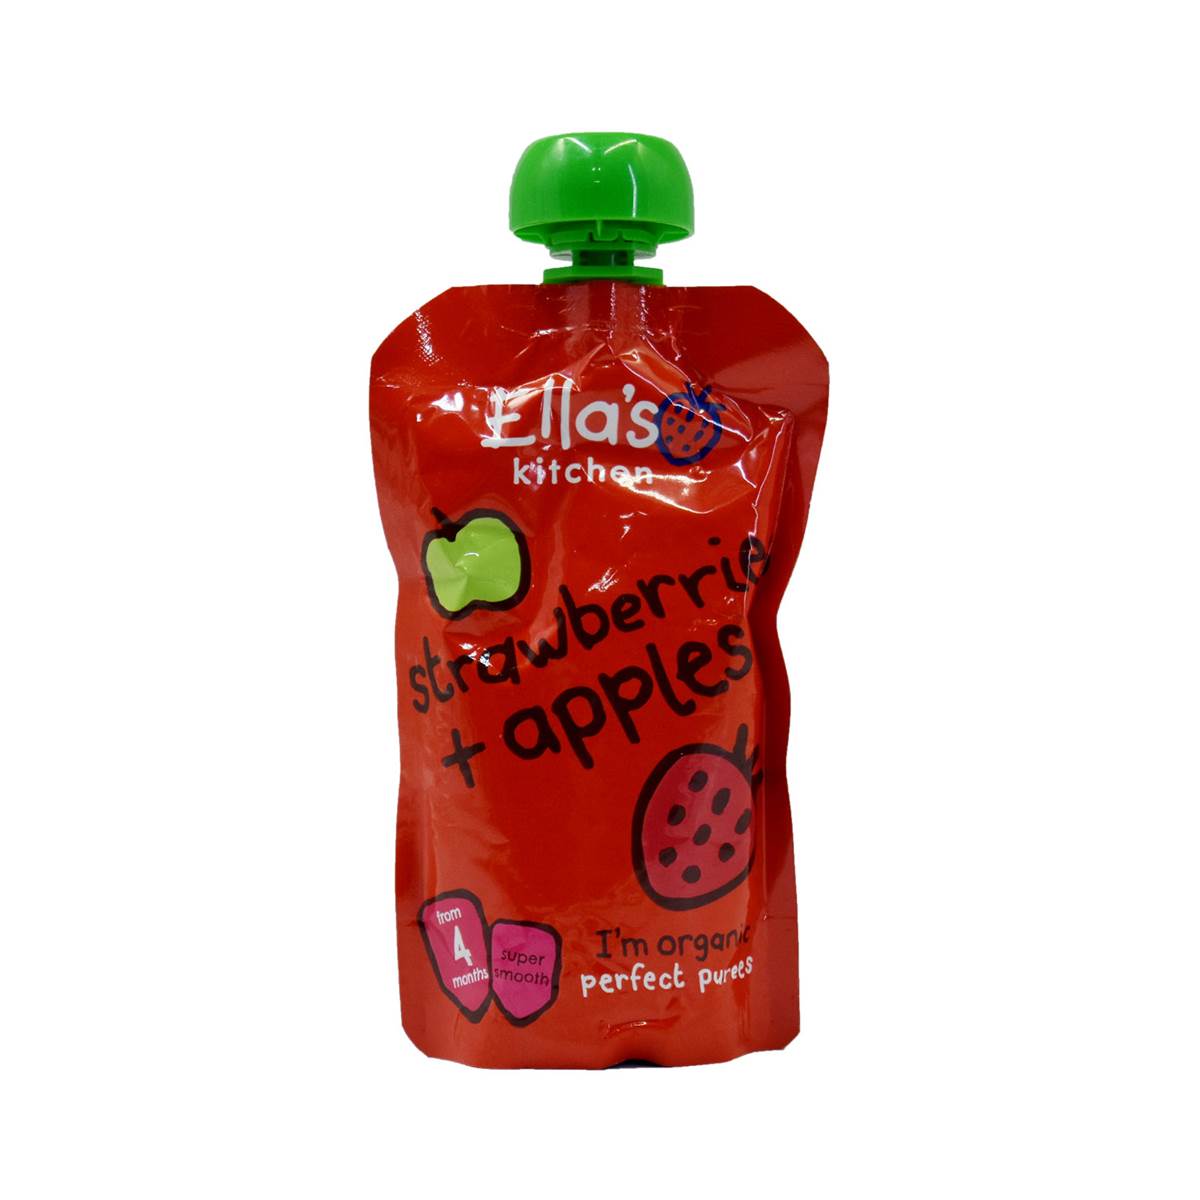 Ellas Kitchen Strawberries + Apples - 120g